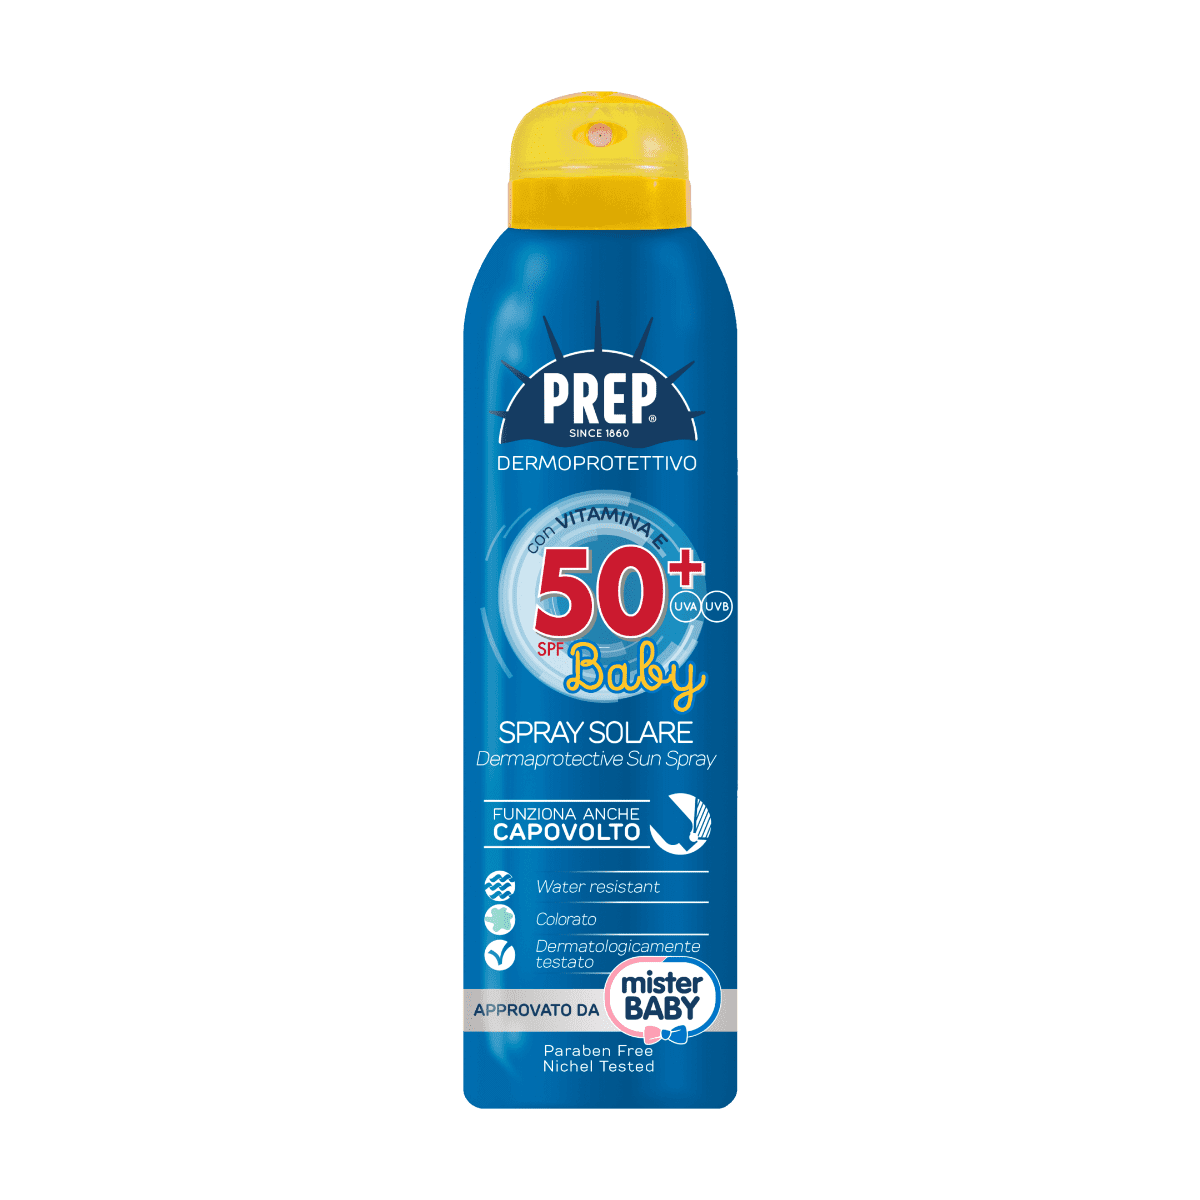 PREP Derma Protective Sun Spray SPF 50+ BABY - ochranný sprej na opalování pro děti, 150 ml